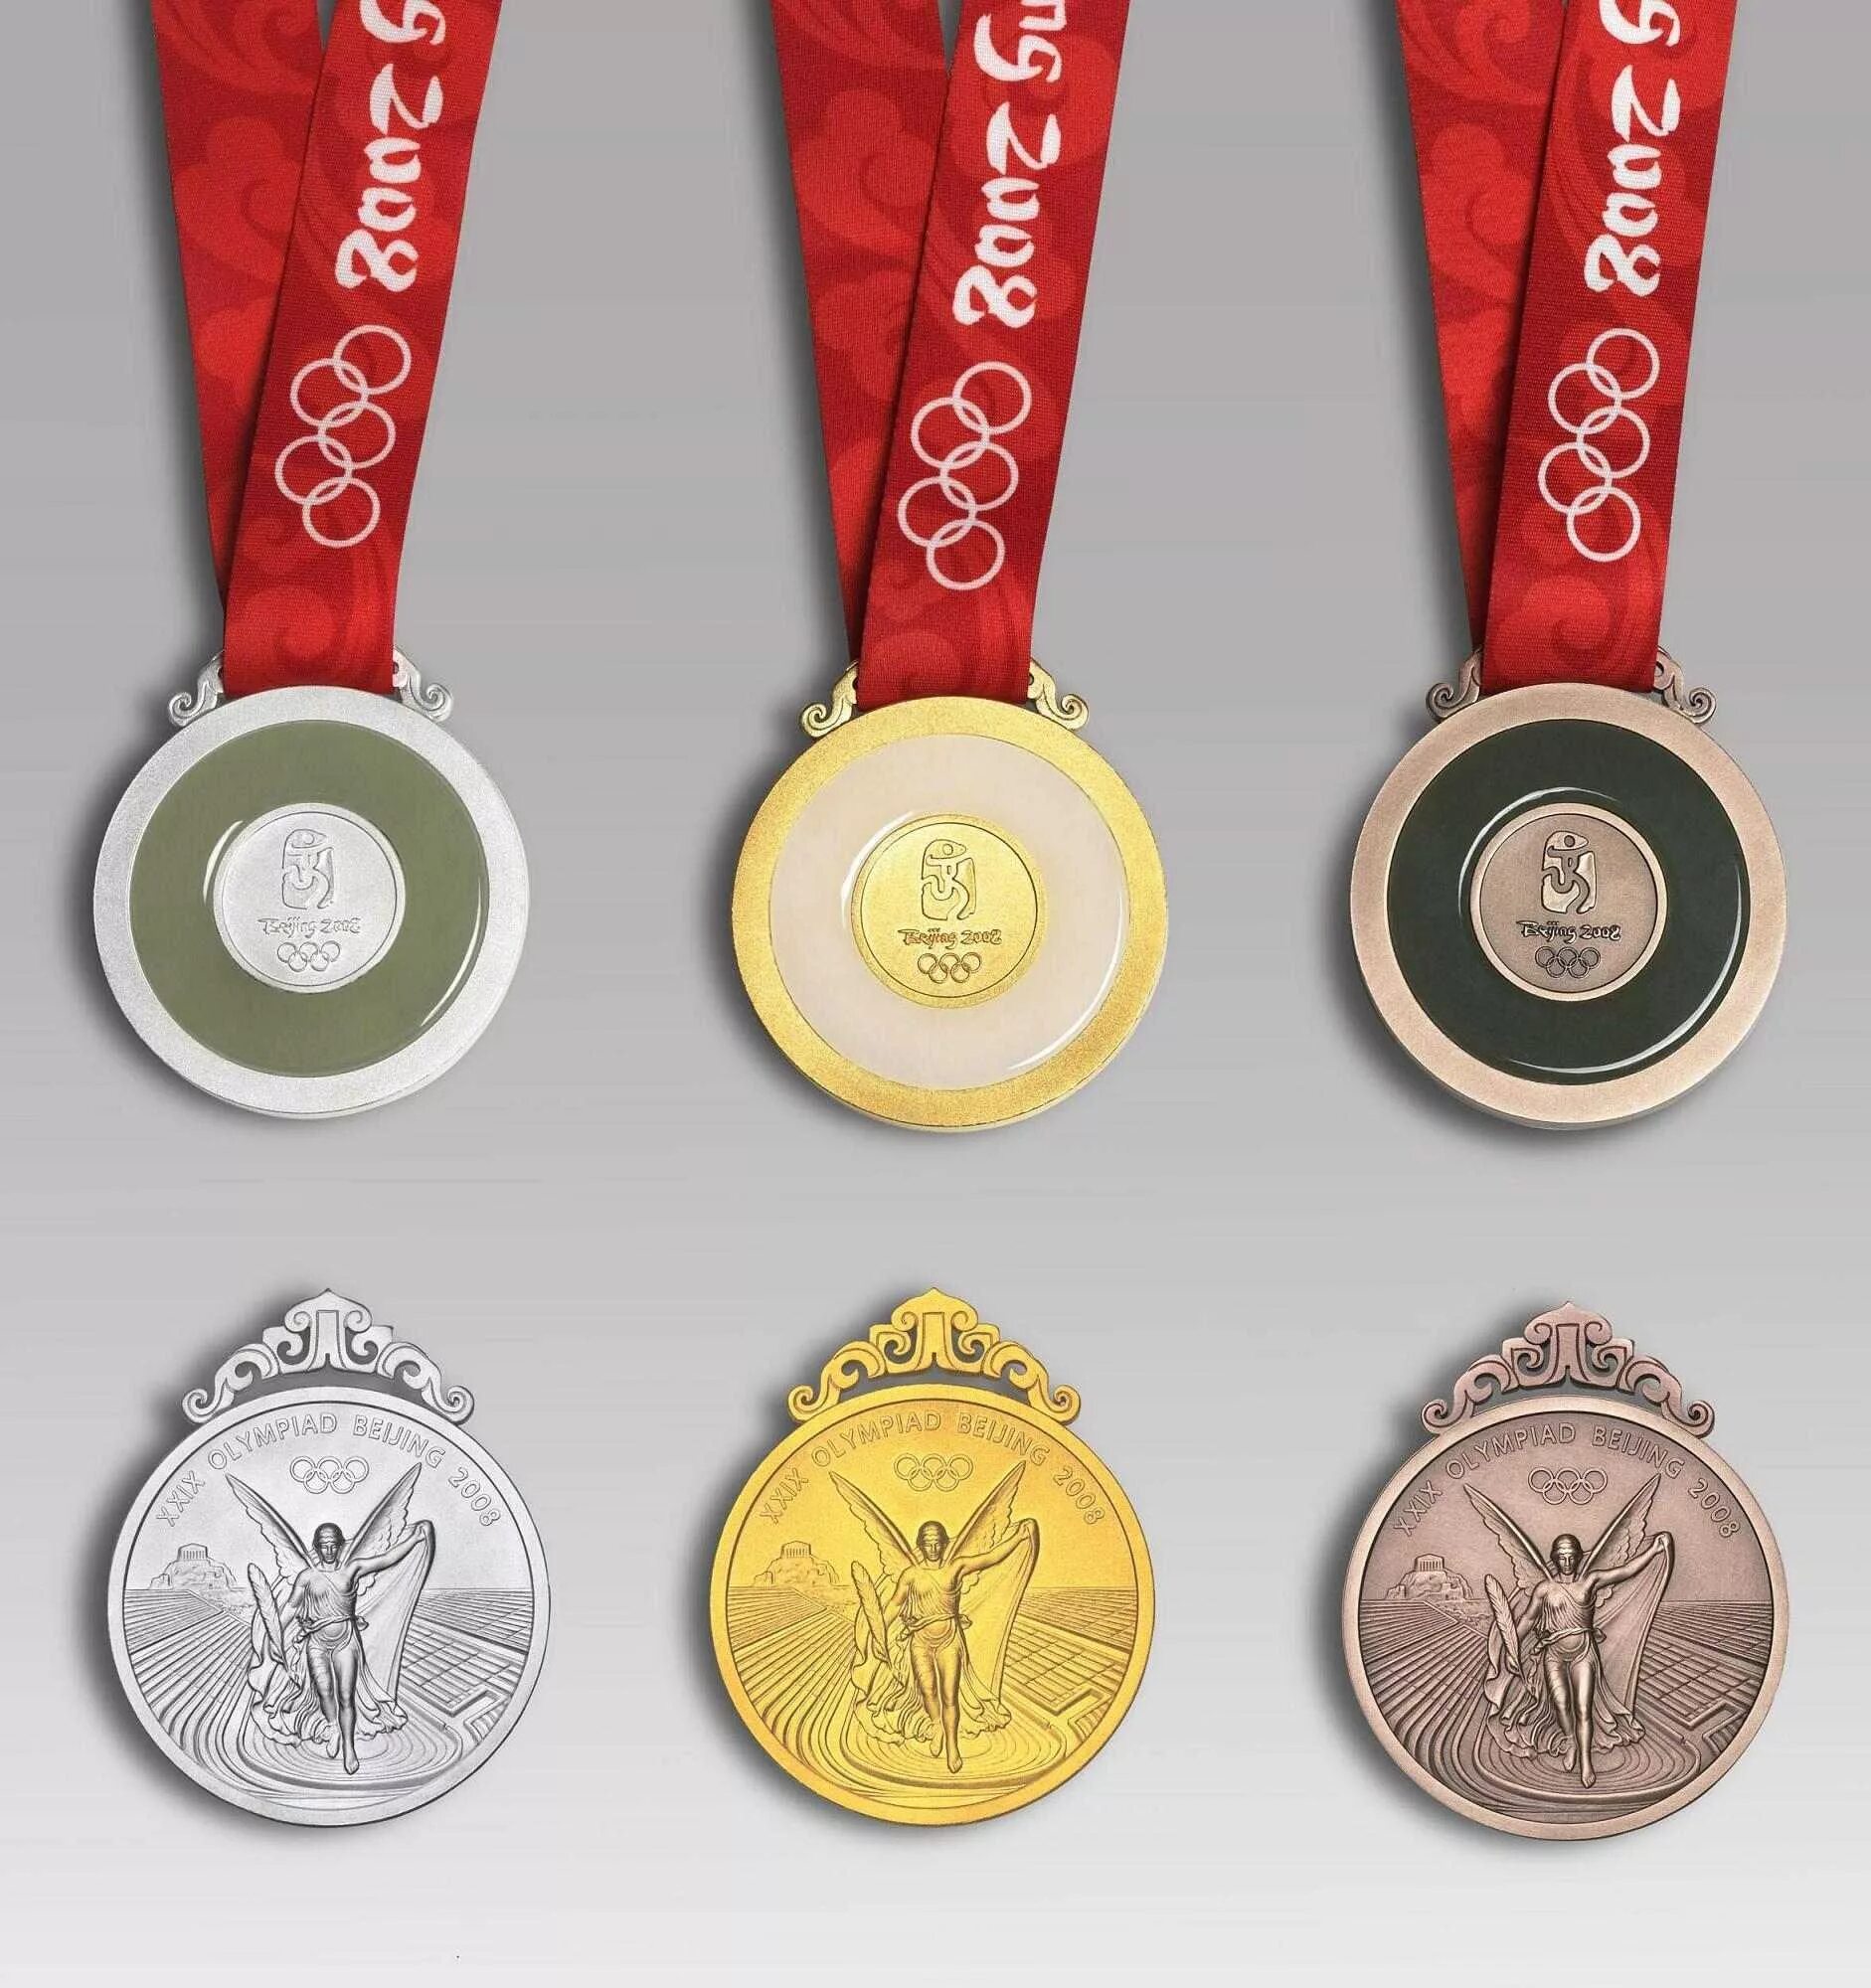 Олимпийская медаль Пекин 2008. Золотая Олимпийская медаль 2008. Олимпийские игры Пекин 2008 медал. The most medals